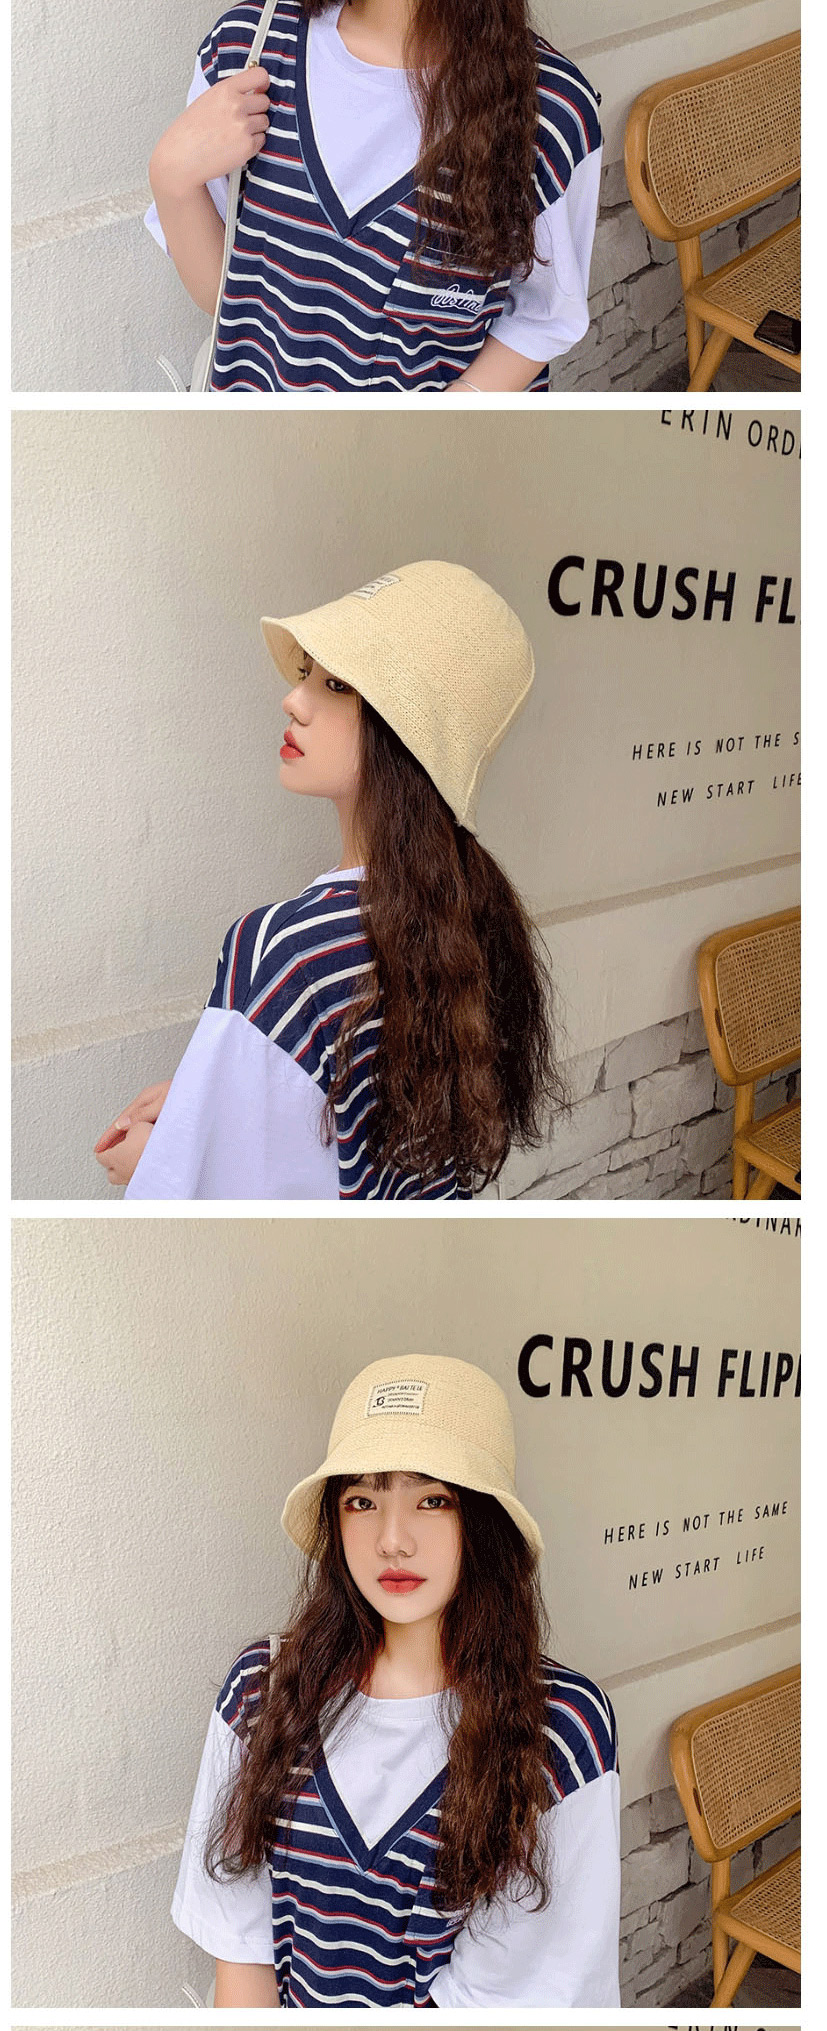 Fashion Grey Card Knitted Milk Silk Cloth Sunshade Fisherman Hat,Sun Hats